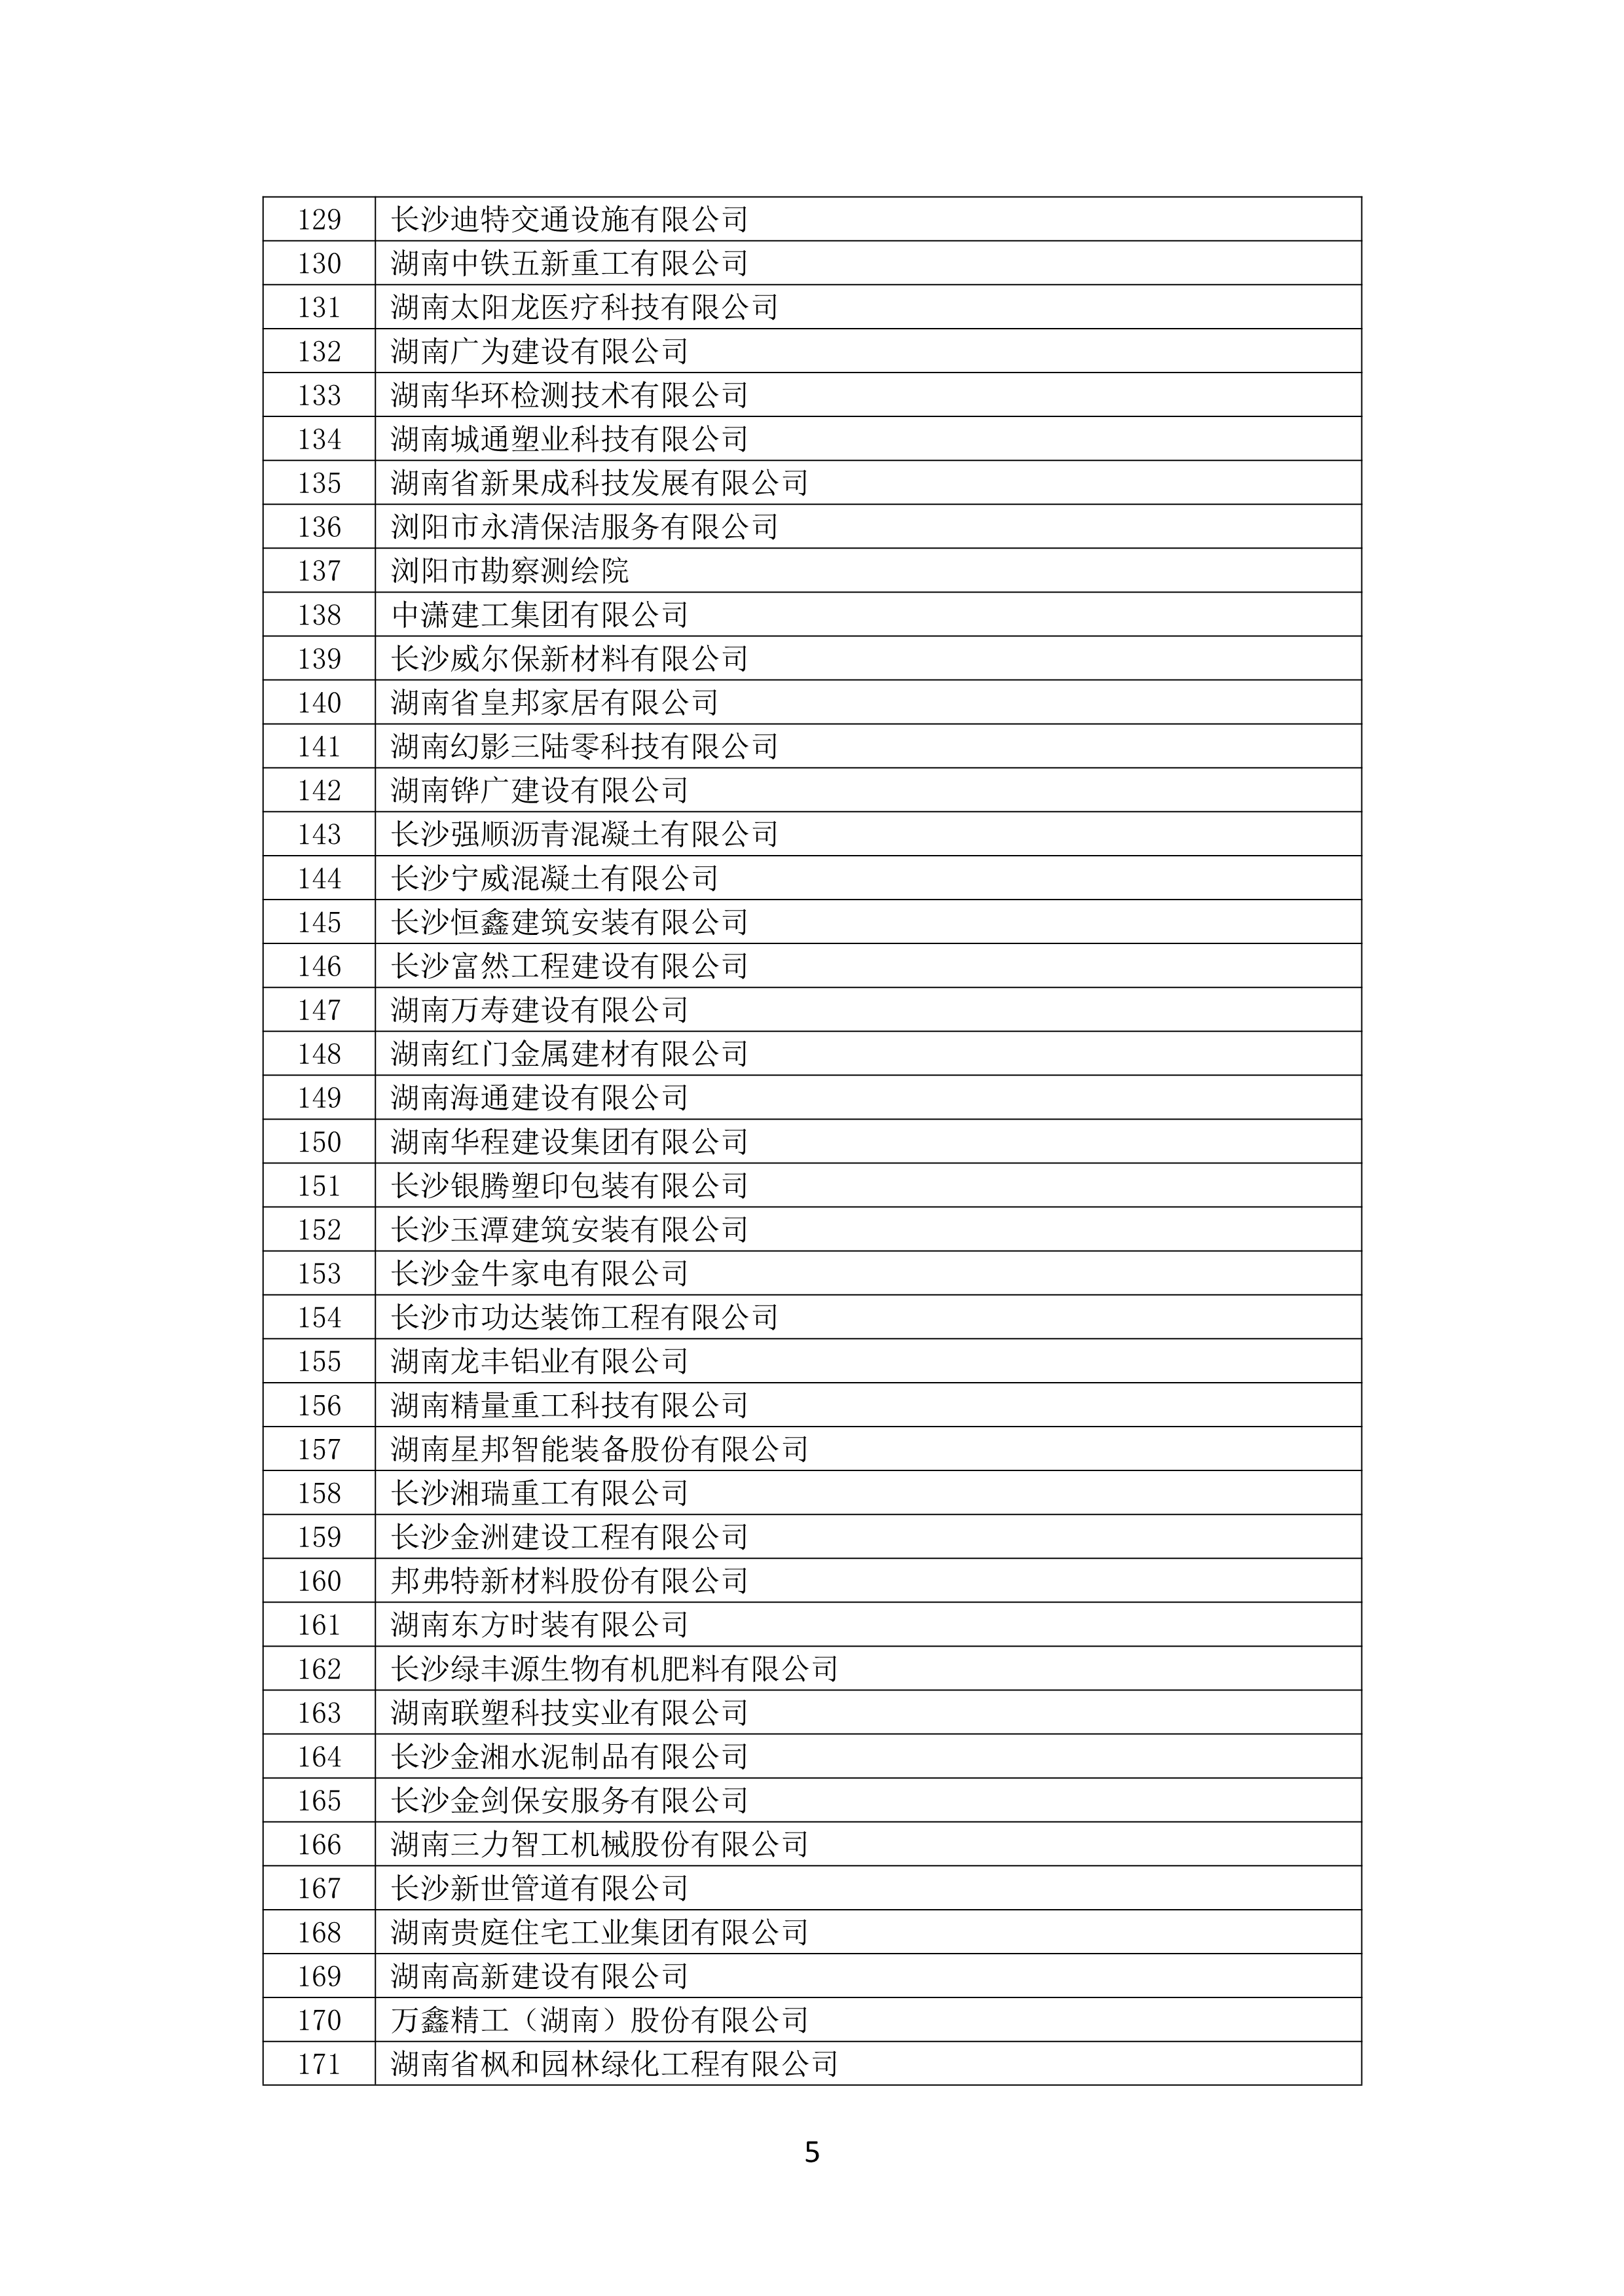 2021 年(nián)度湖南省守合同重信用企業名單_6.png